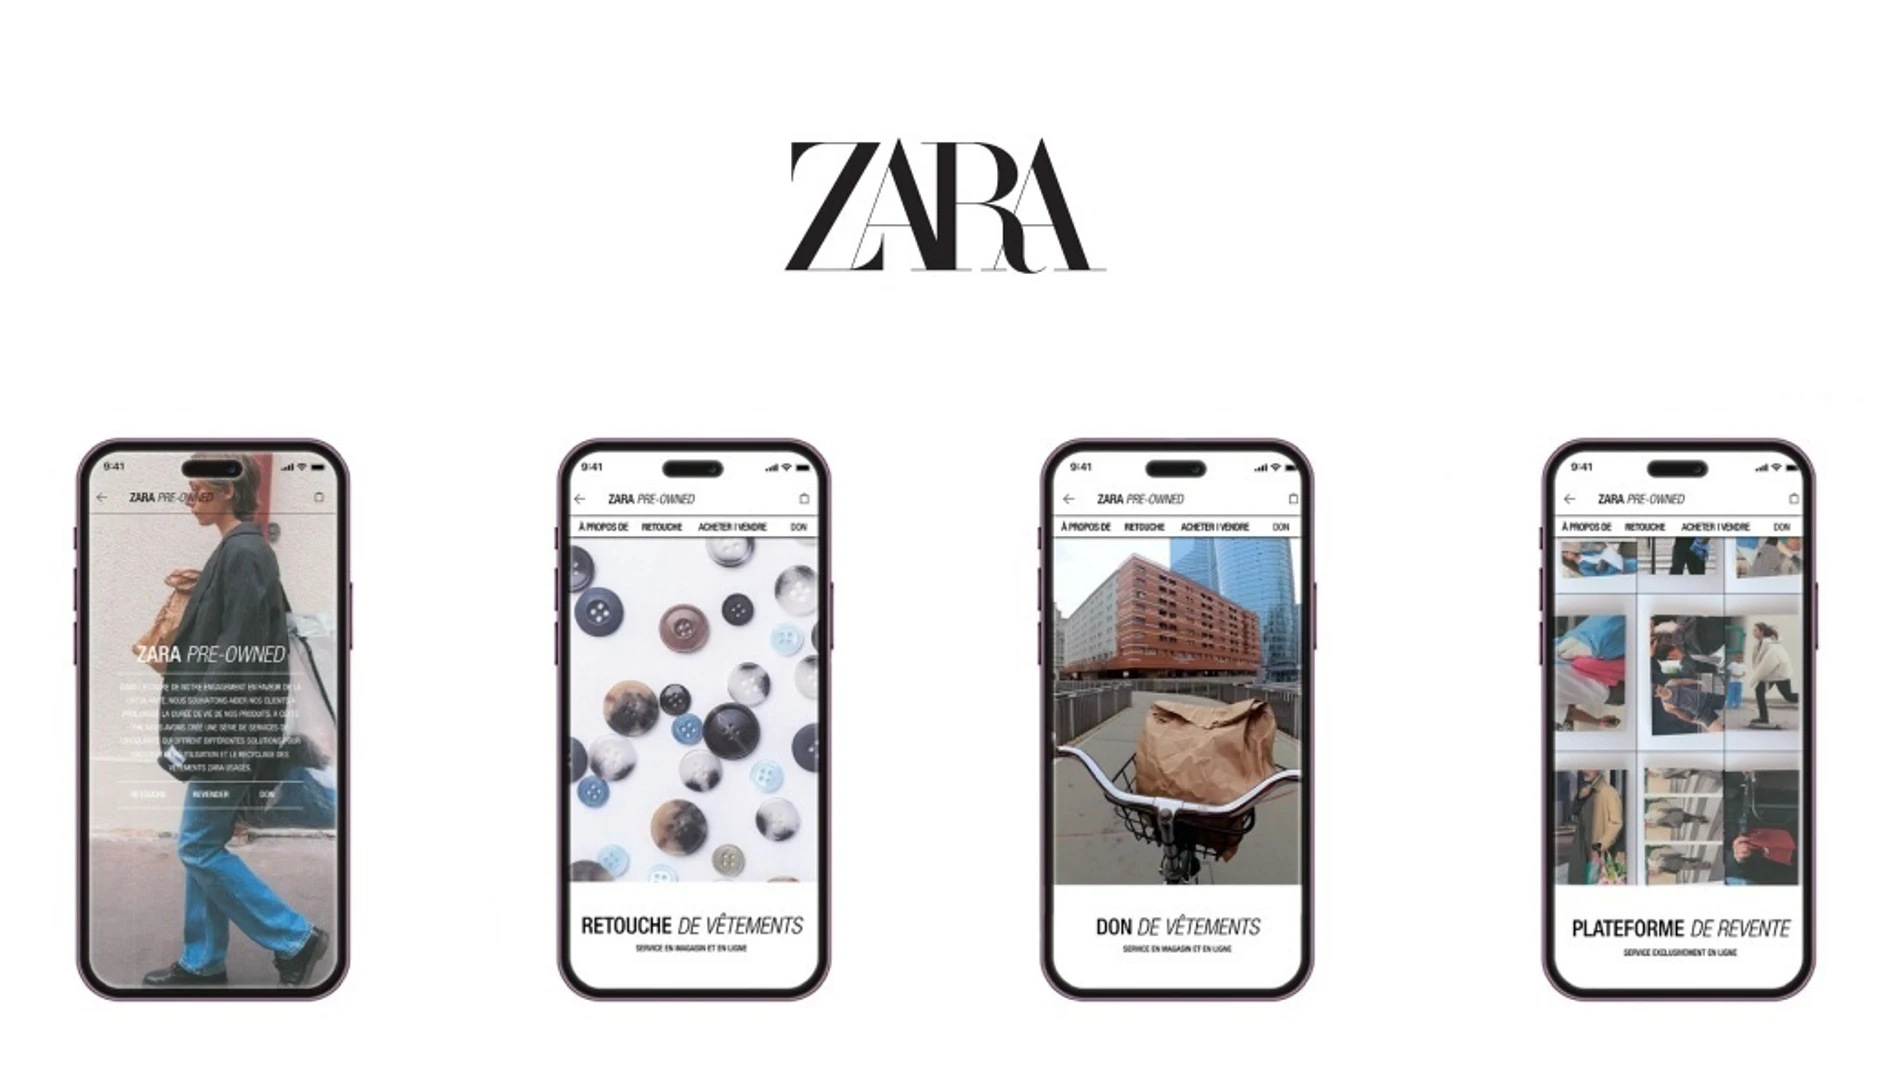 Zara lanza su plataforma de segunda mano y reparación de prendas en España el próximo 12 de diciembre